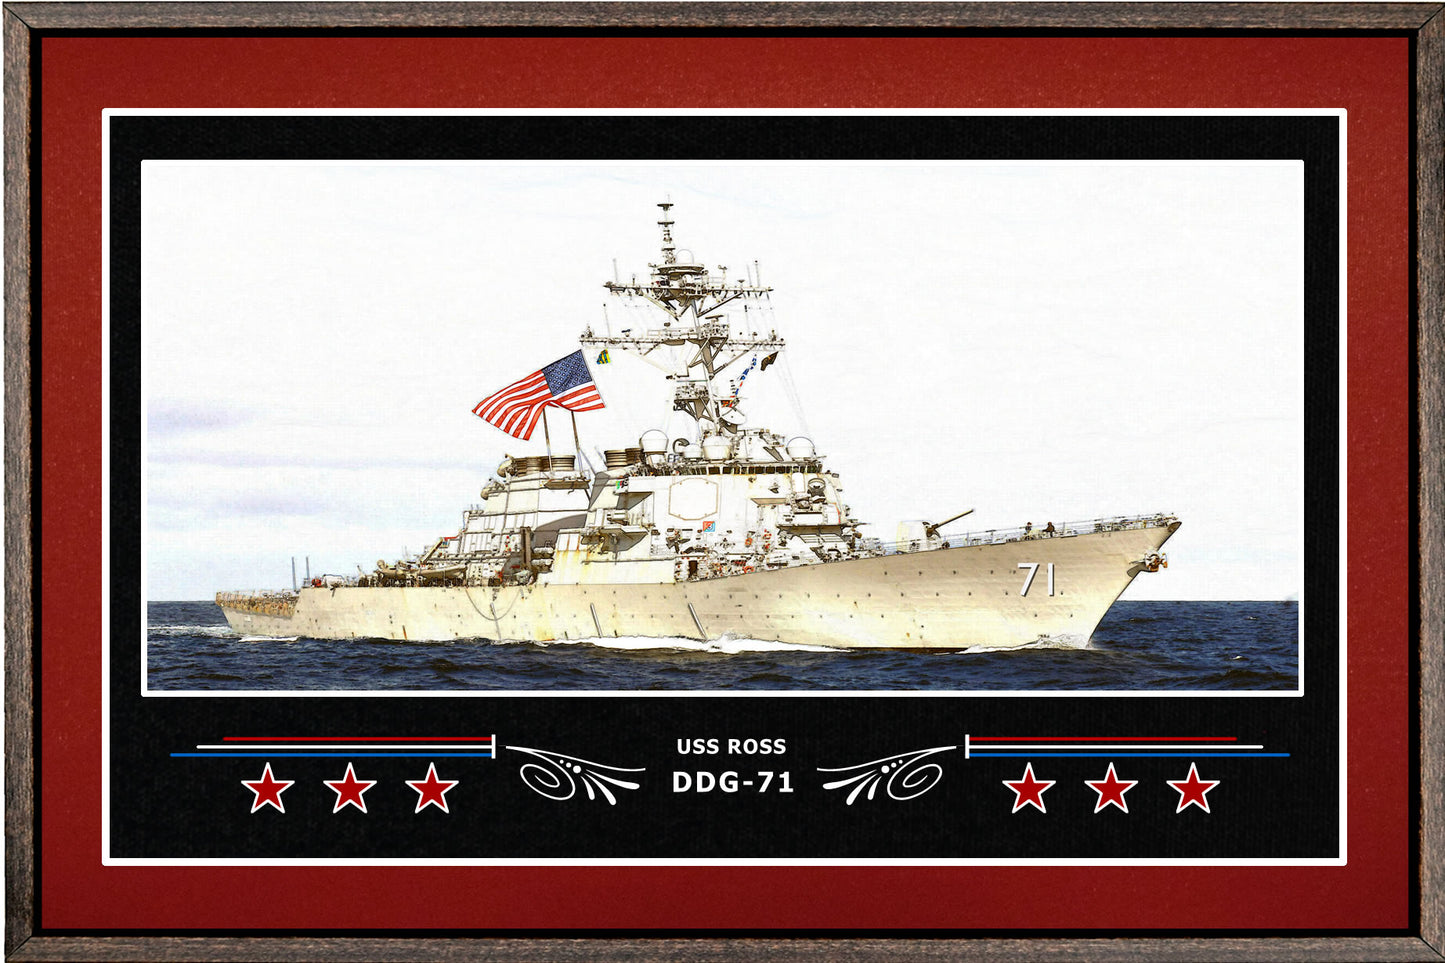 USS ROSS DDG 71 BOX FRAMED CANVAS ART BURGUNDY